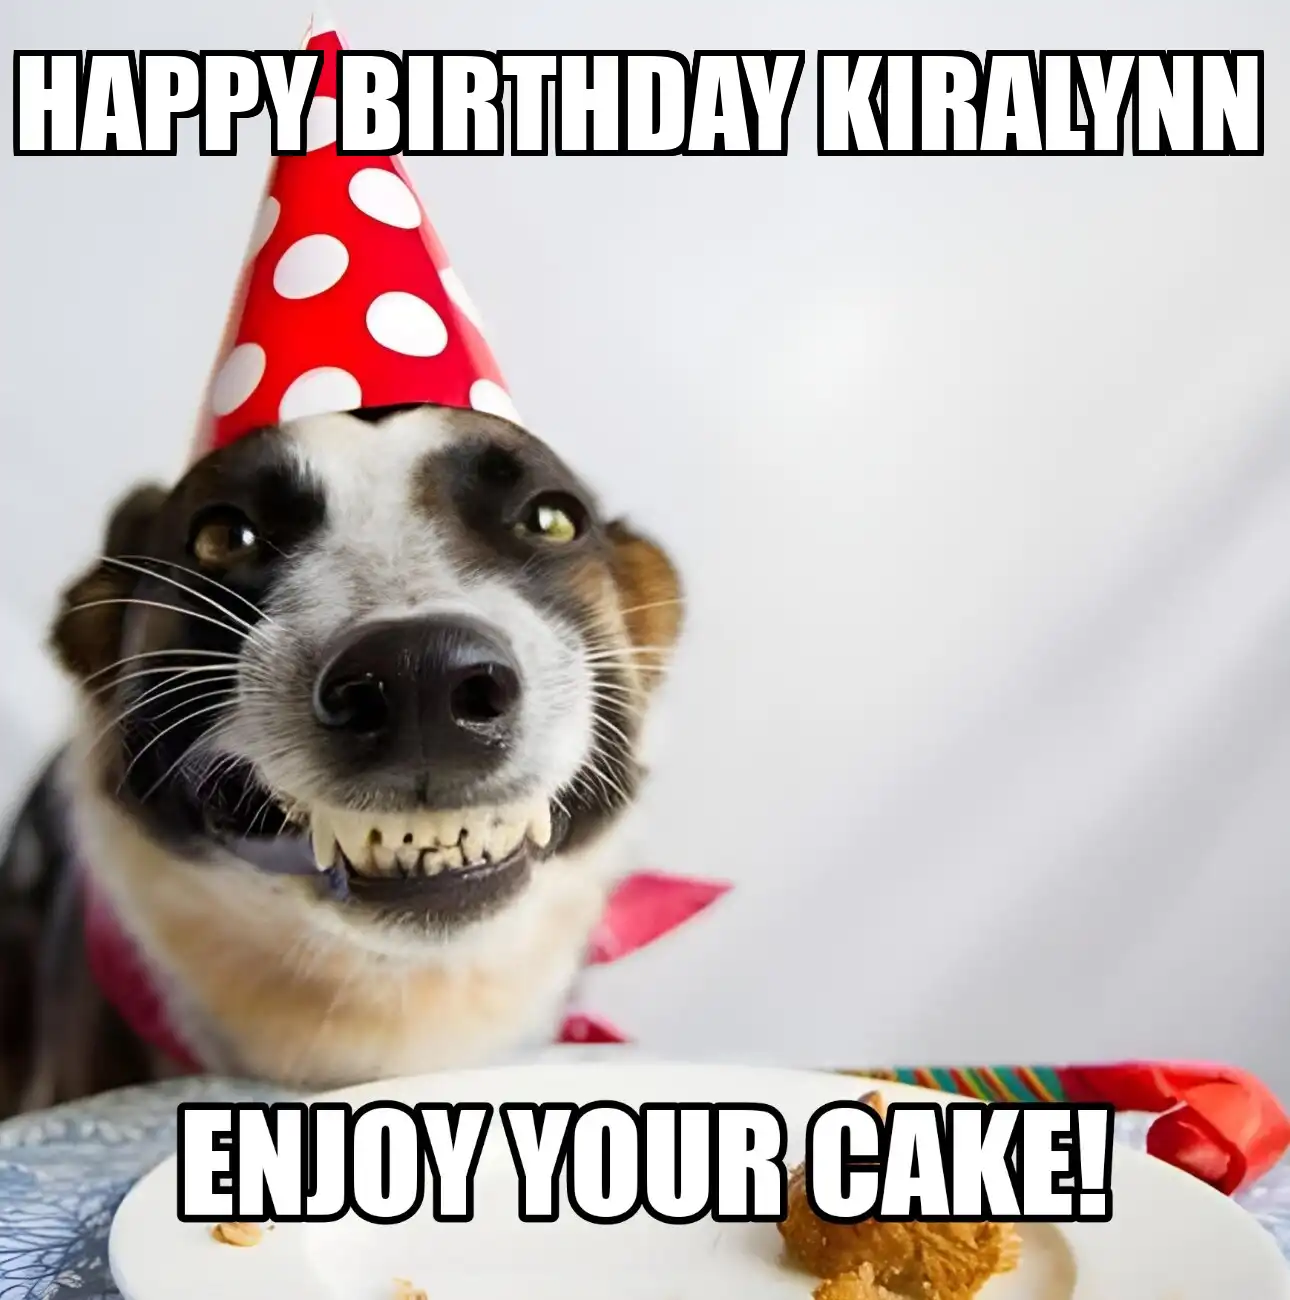 Happy Birthday Kiralynn Enjoy Your Cake Dog Meme